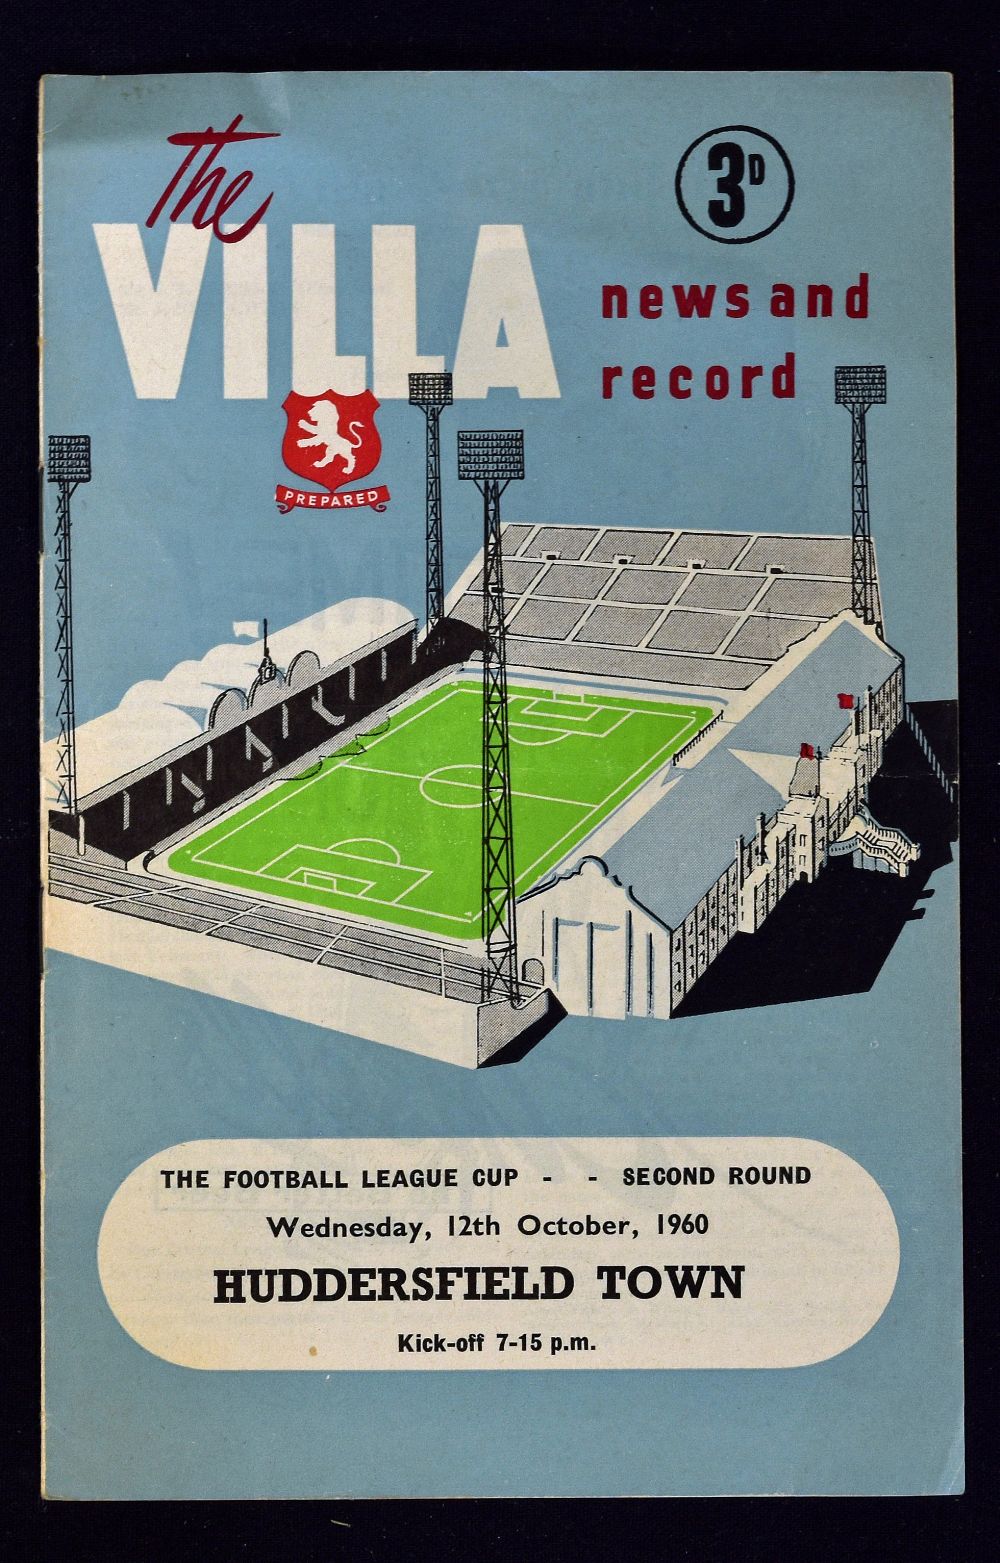 1960/1961 Aston Villa v Huddersfield Town Football League Cup game at Villa Park 12 October 1960,